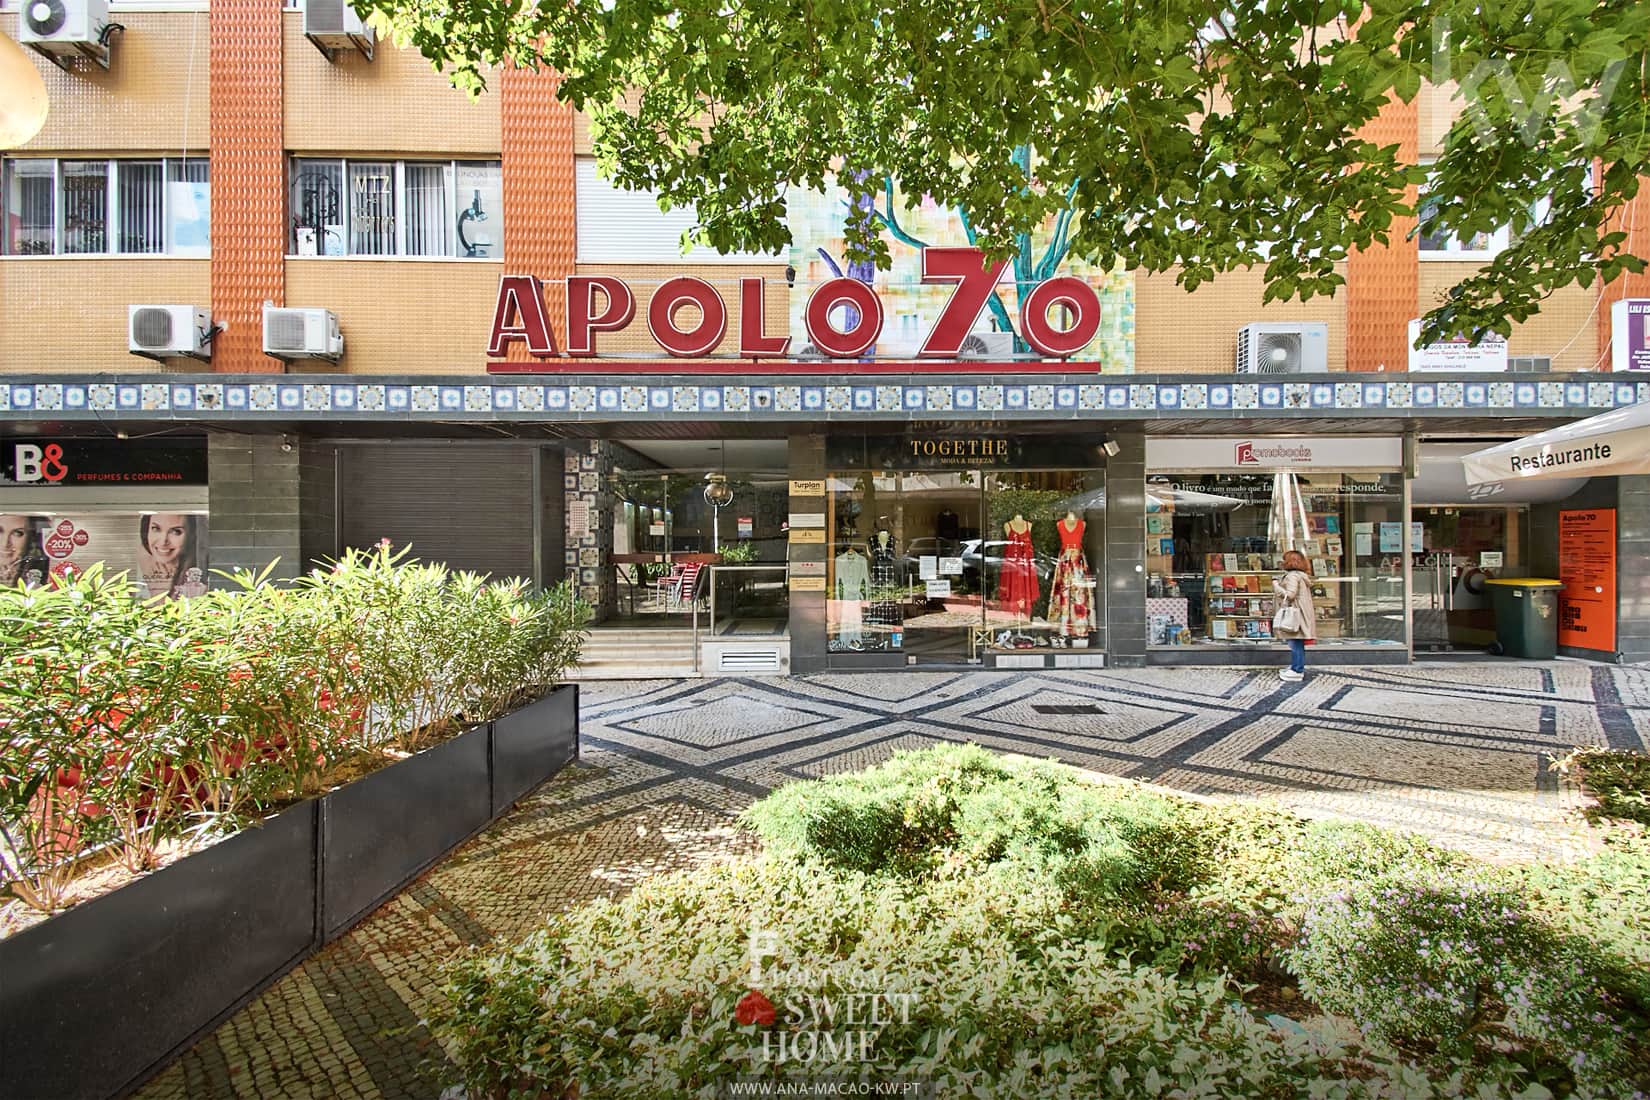 Apolo 70 Shopping Center, in the neighborhood